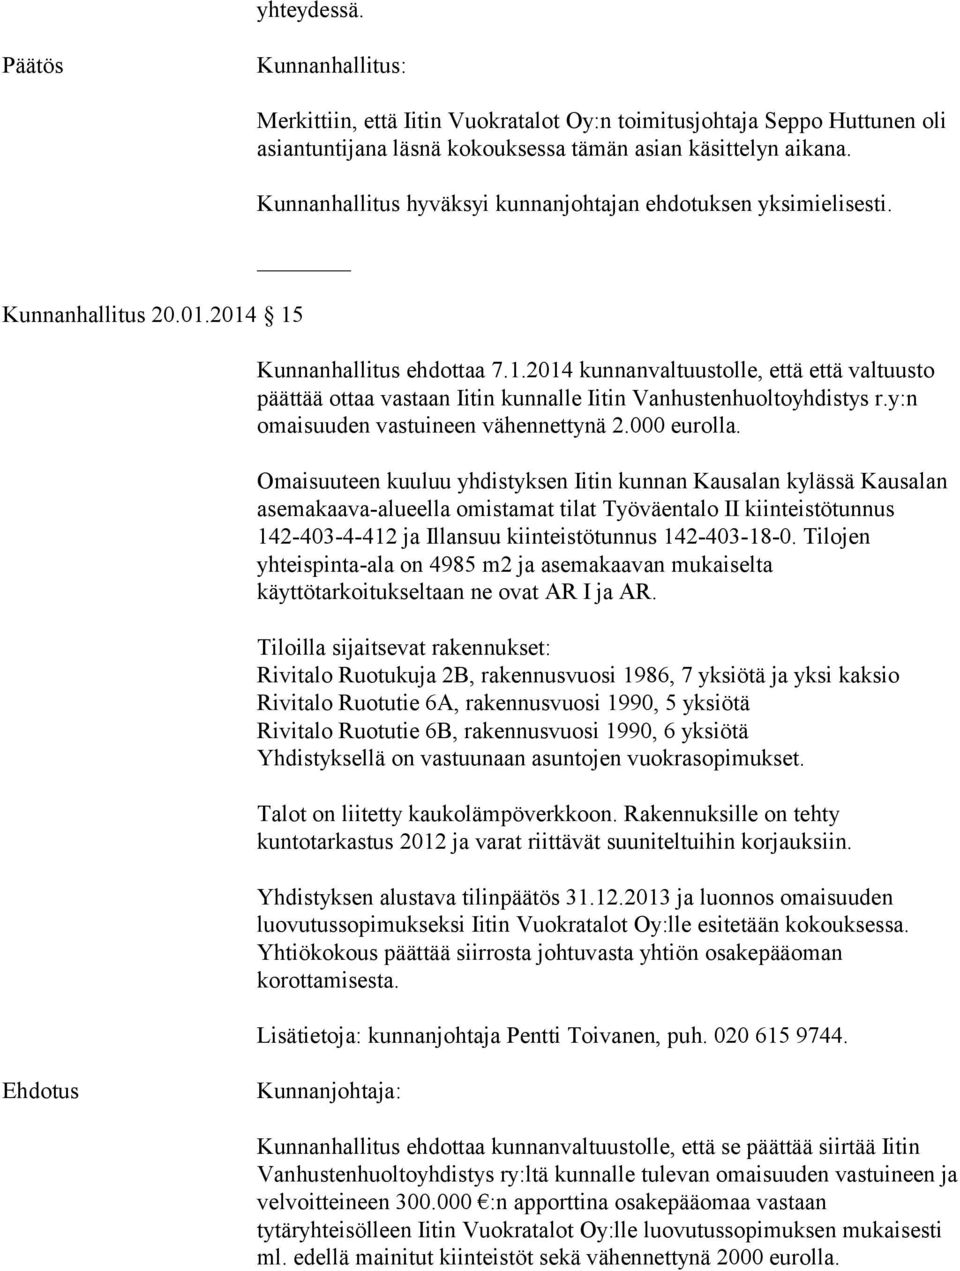 2014 kunnanvaltuustolle, että että valtuusto päättää ottaa vastaan Iitin kunnalle Iitin Vanhustenhuoltoyhdistys r.y:n omaisuuden vastuineen vähennettynä 2.000 eurolla.